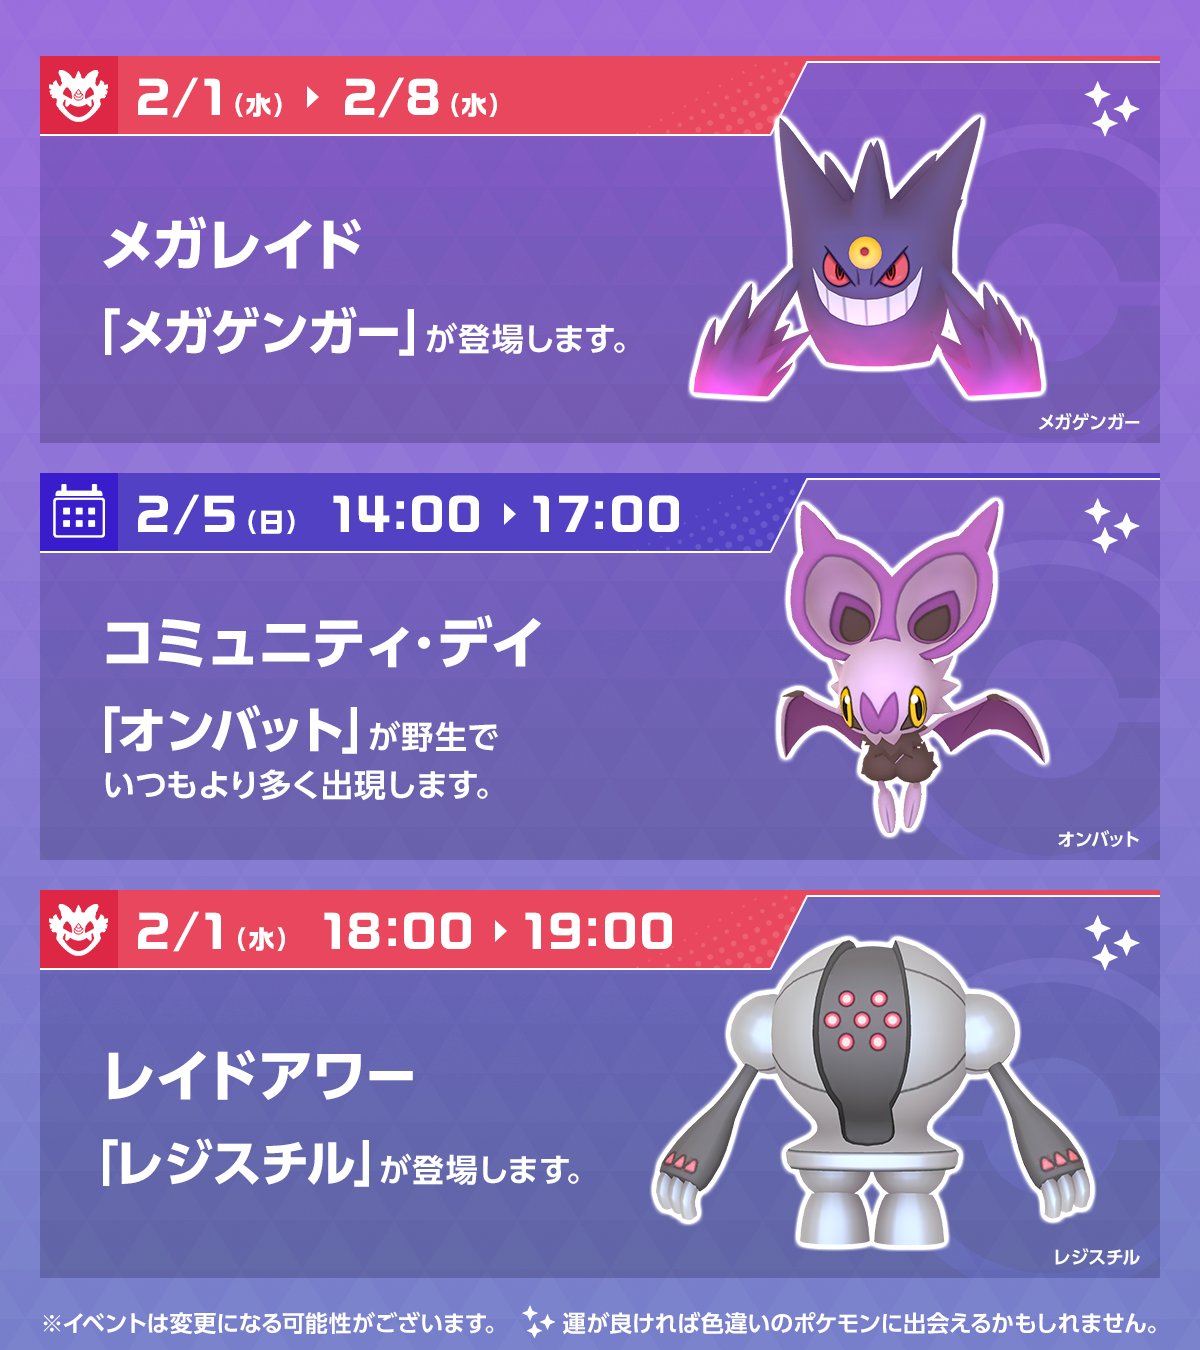 Pokemon Go Japan ポケモンgo 今週のスケジュール 2月1日 水 から 伝説レイドバトル で でんじほう を覚えた レジスチル が登場します また 2月5日 日 は コミュニティ デイ オンバット が野生でいつもより多く出現します